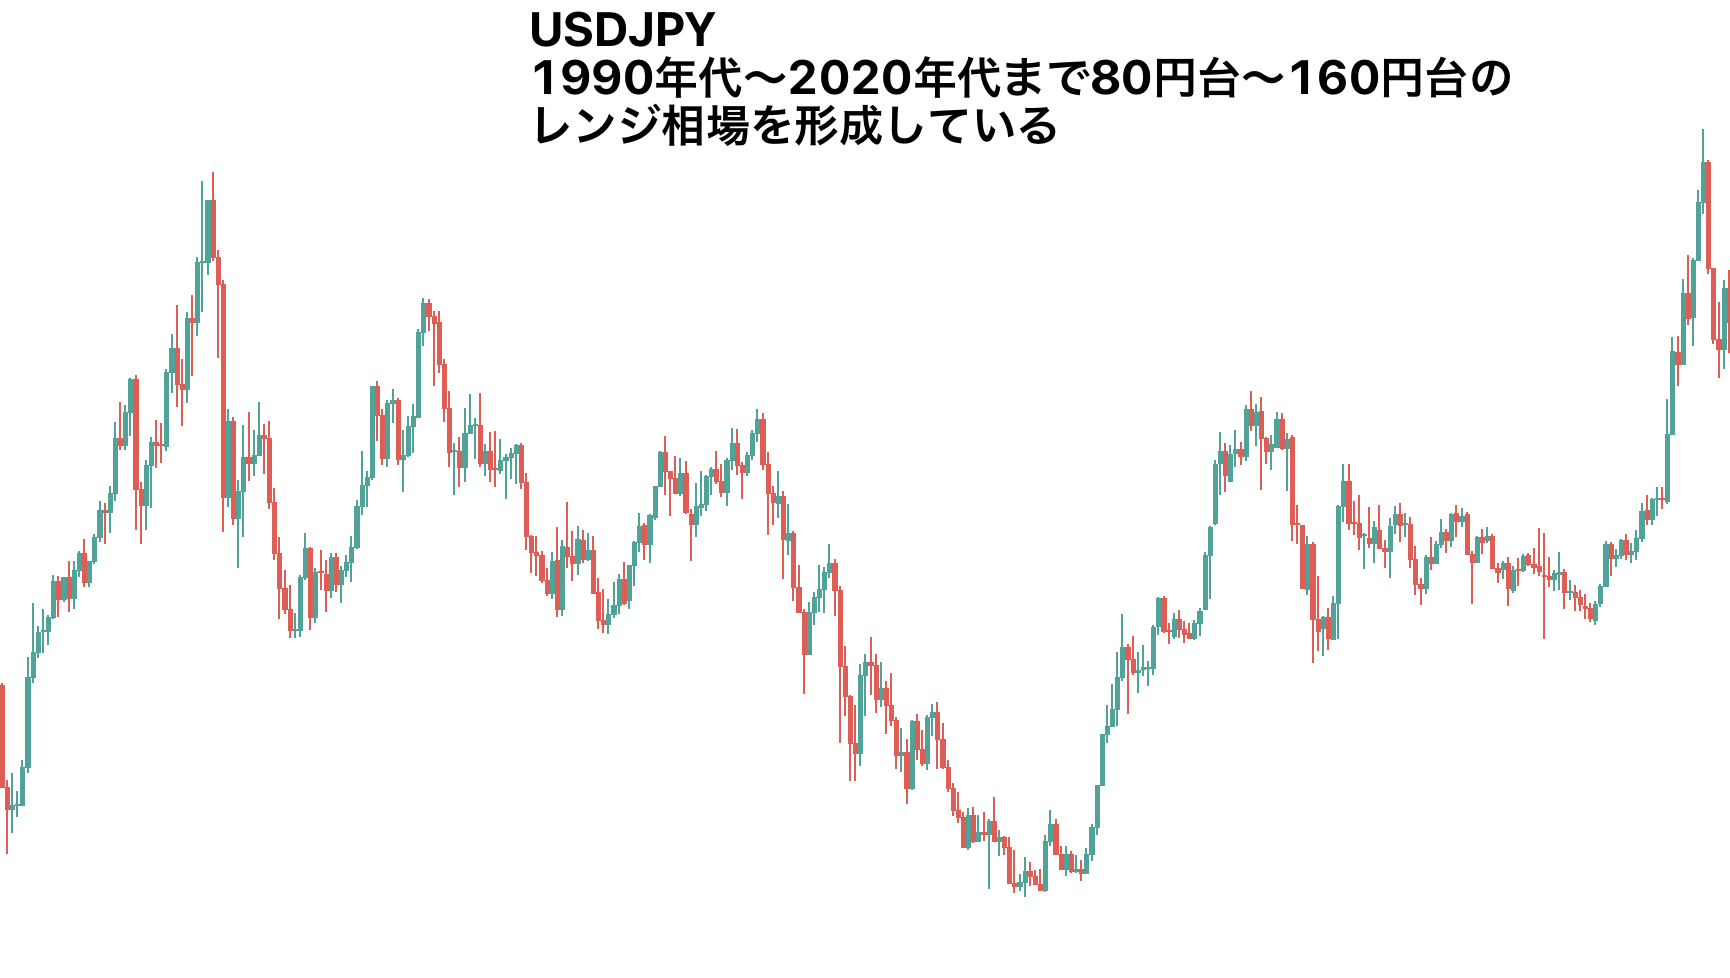 ドル円は1990～2020年までレンジ相場が形成されているイメージ